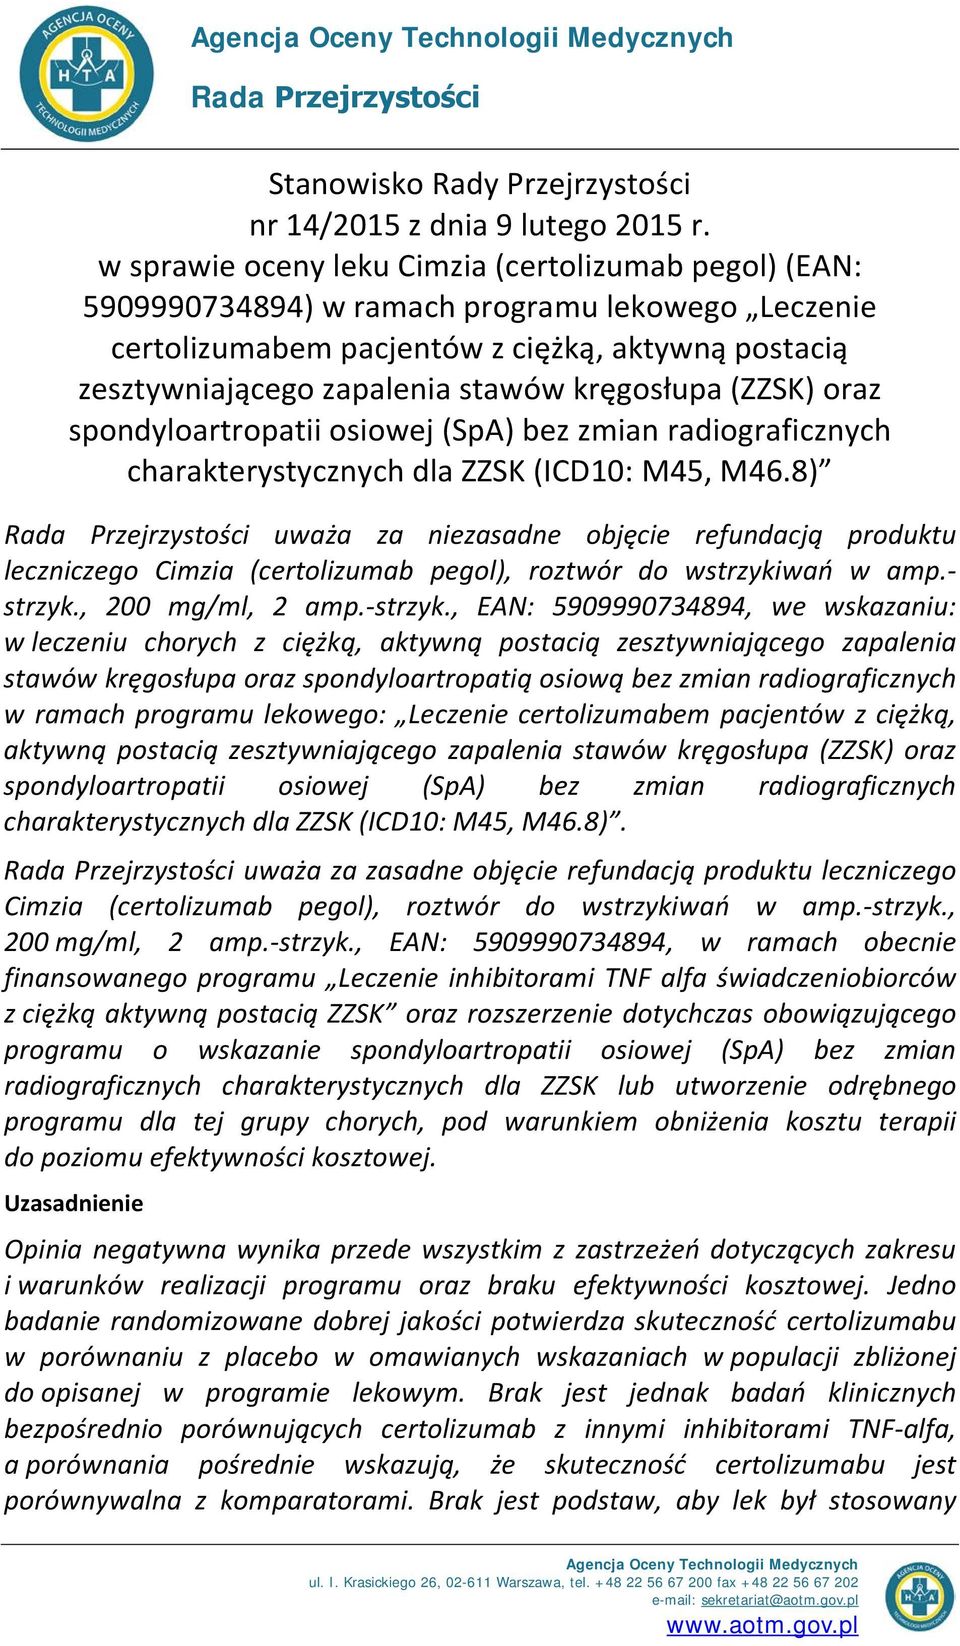 kręgosłupa (ZZSK) oraz spondyloartropatii osiowej (SpA) bez zmian radiograficznych charakterystycznych dla ZZSK (ICD10: M45, M46.